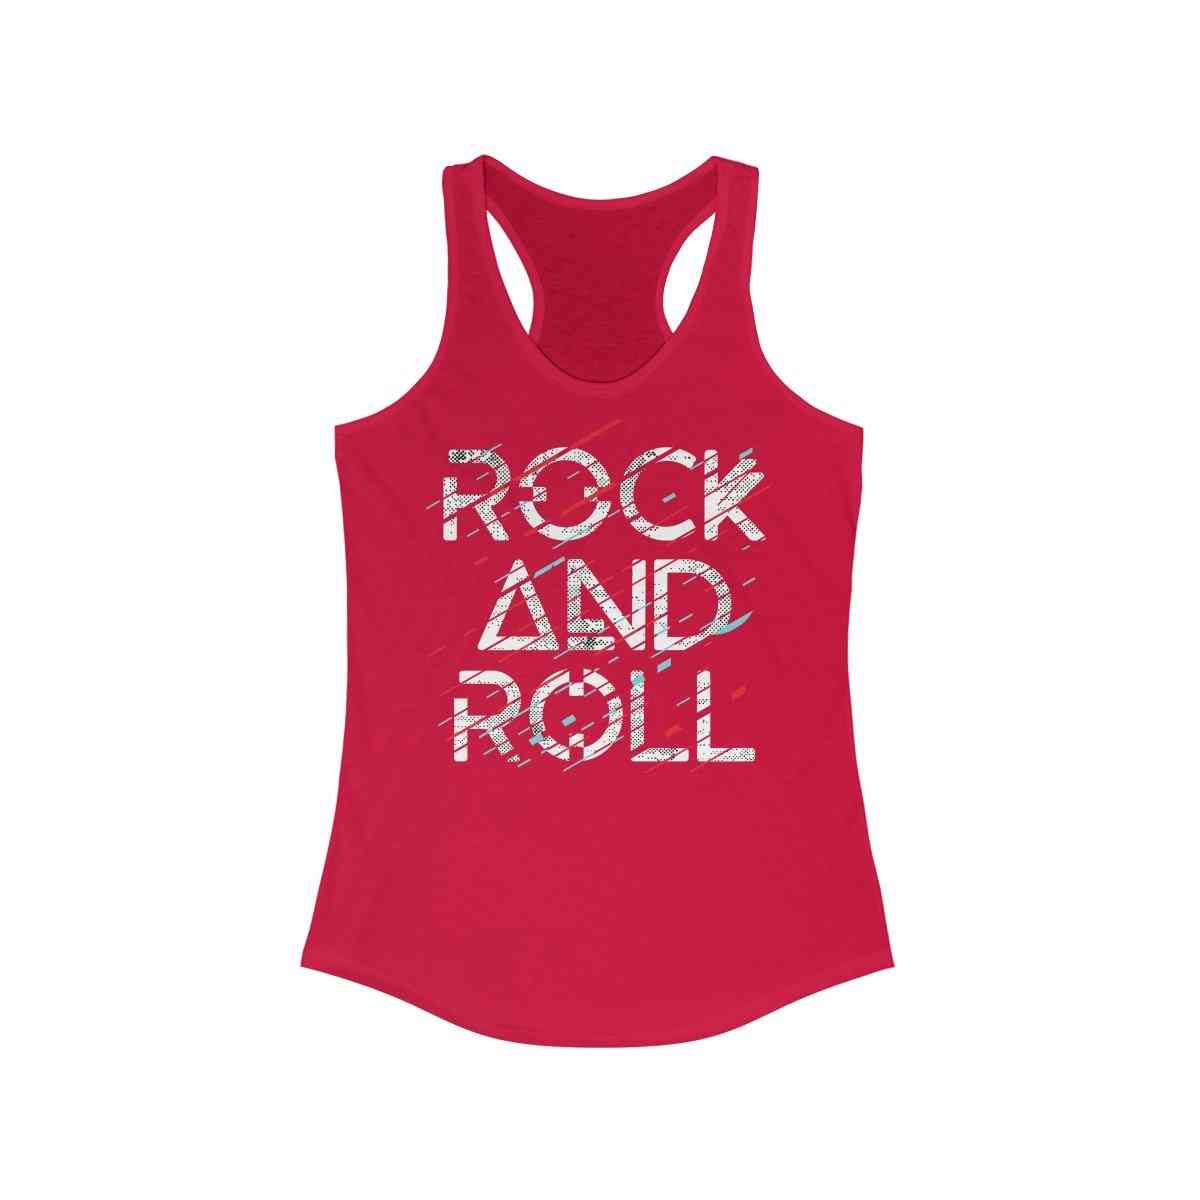 Rock and roll tisk, ženska majica z dirkačem